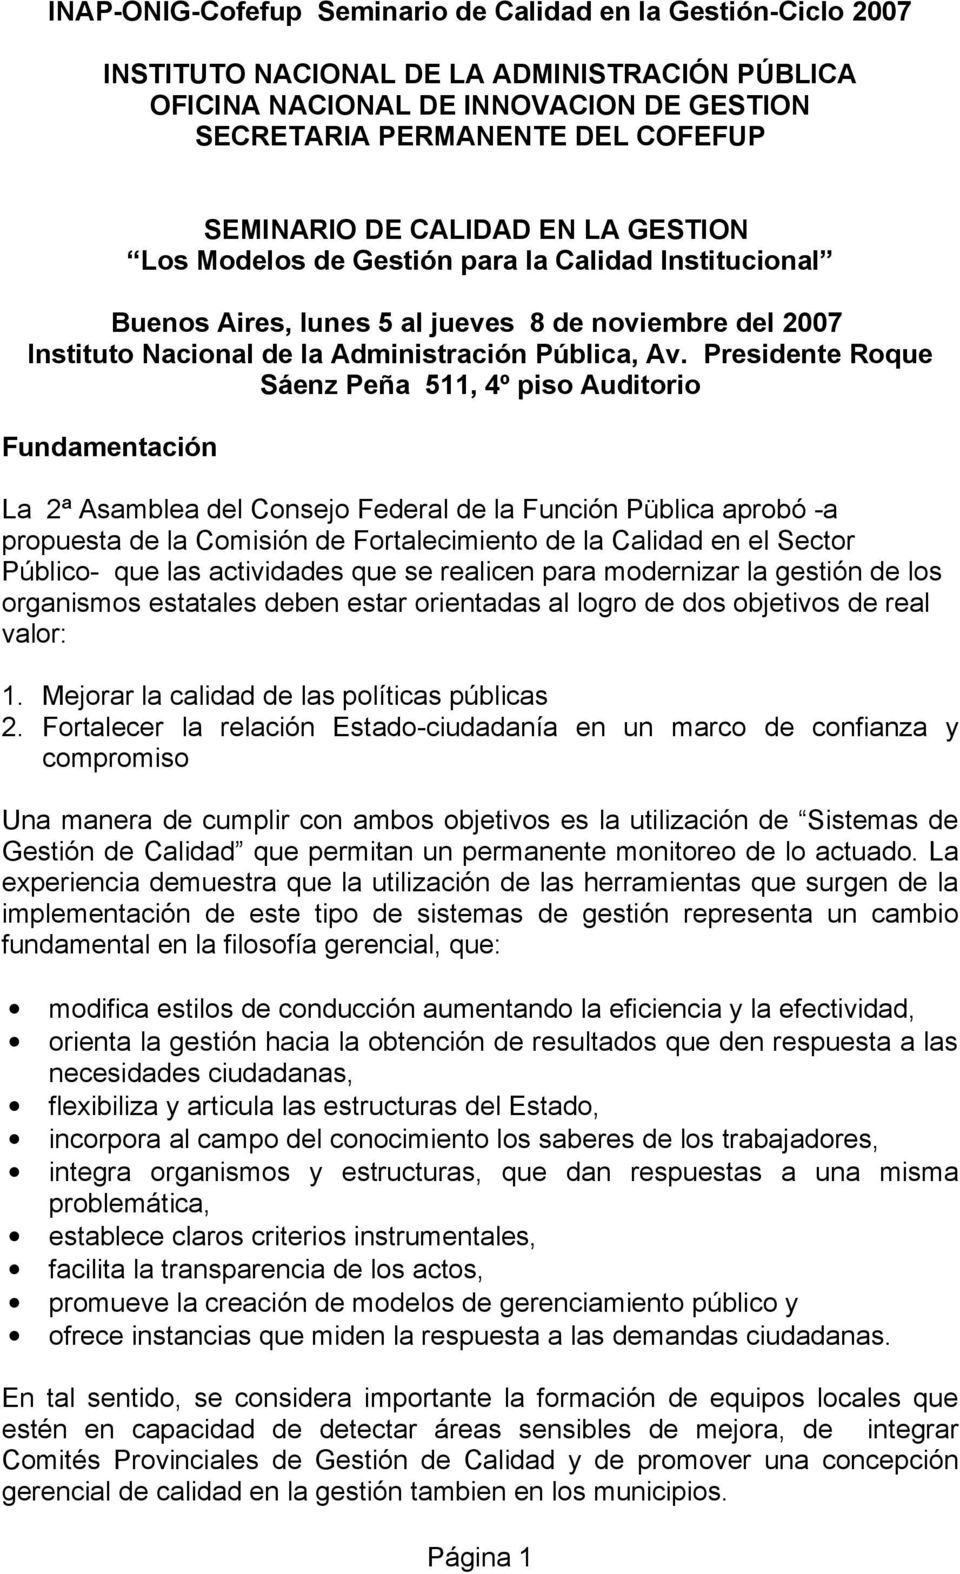 Presidente Roque Sáenz Peña 511, 4º piso Auditorio Fundamentación La 2ª Asamblea del Consejo Federal de la Función Püblica aprobó -a propuesta de la Comisión de Fortalecimiento de la Calidad en el